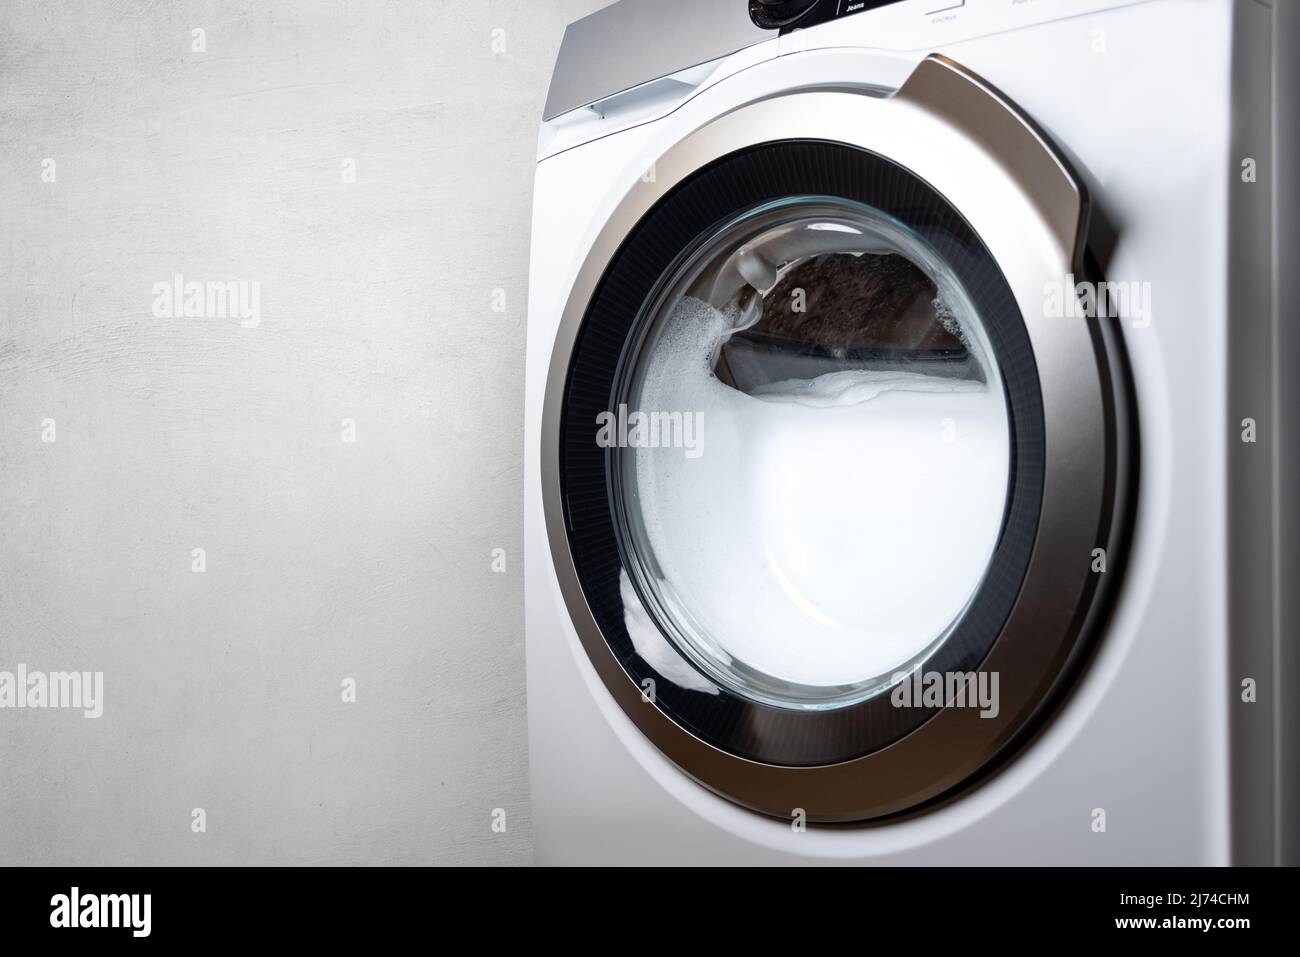 Waschmaschine voller Schaum Stockfotografie - Alamy